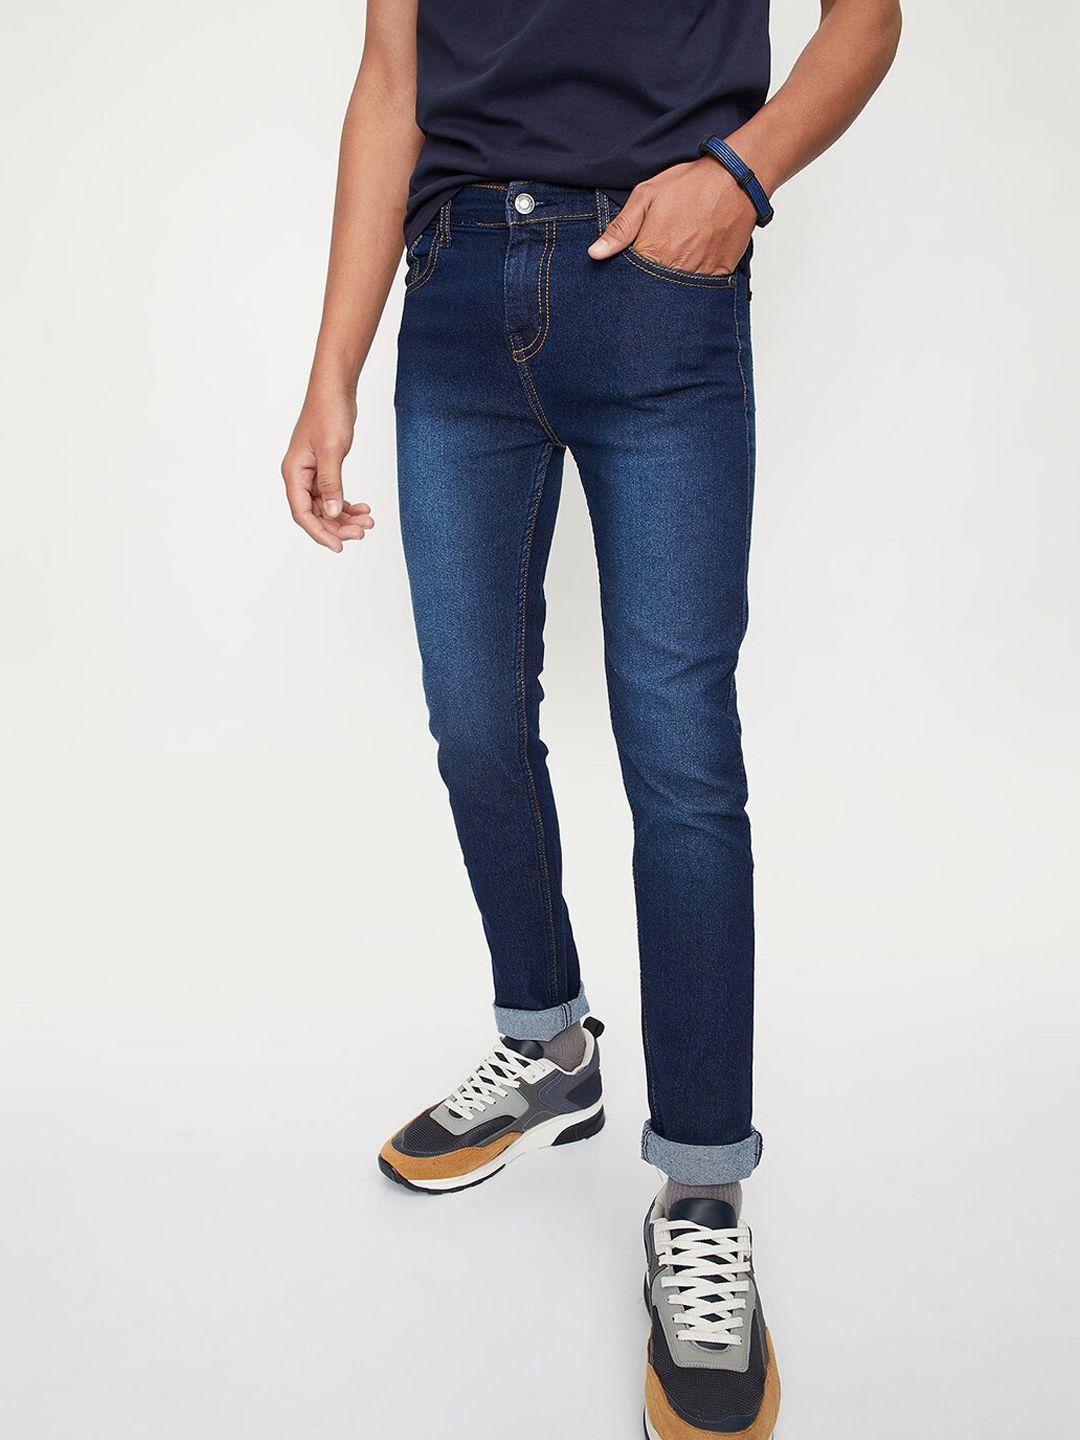 max boys light fade regular fit jeans